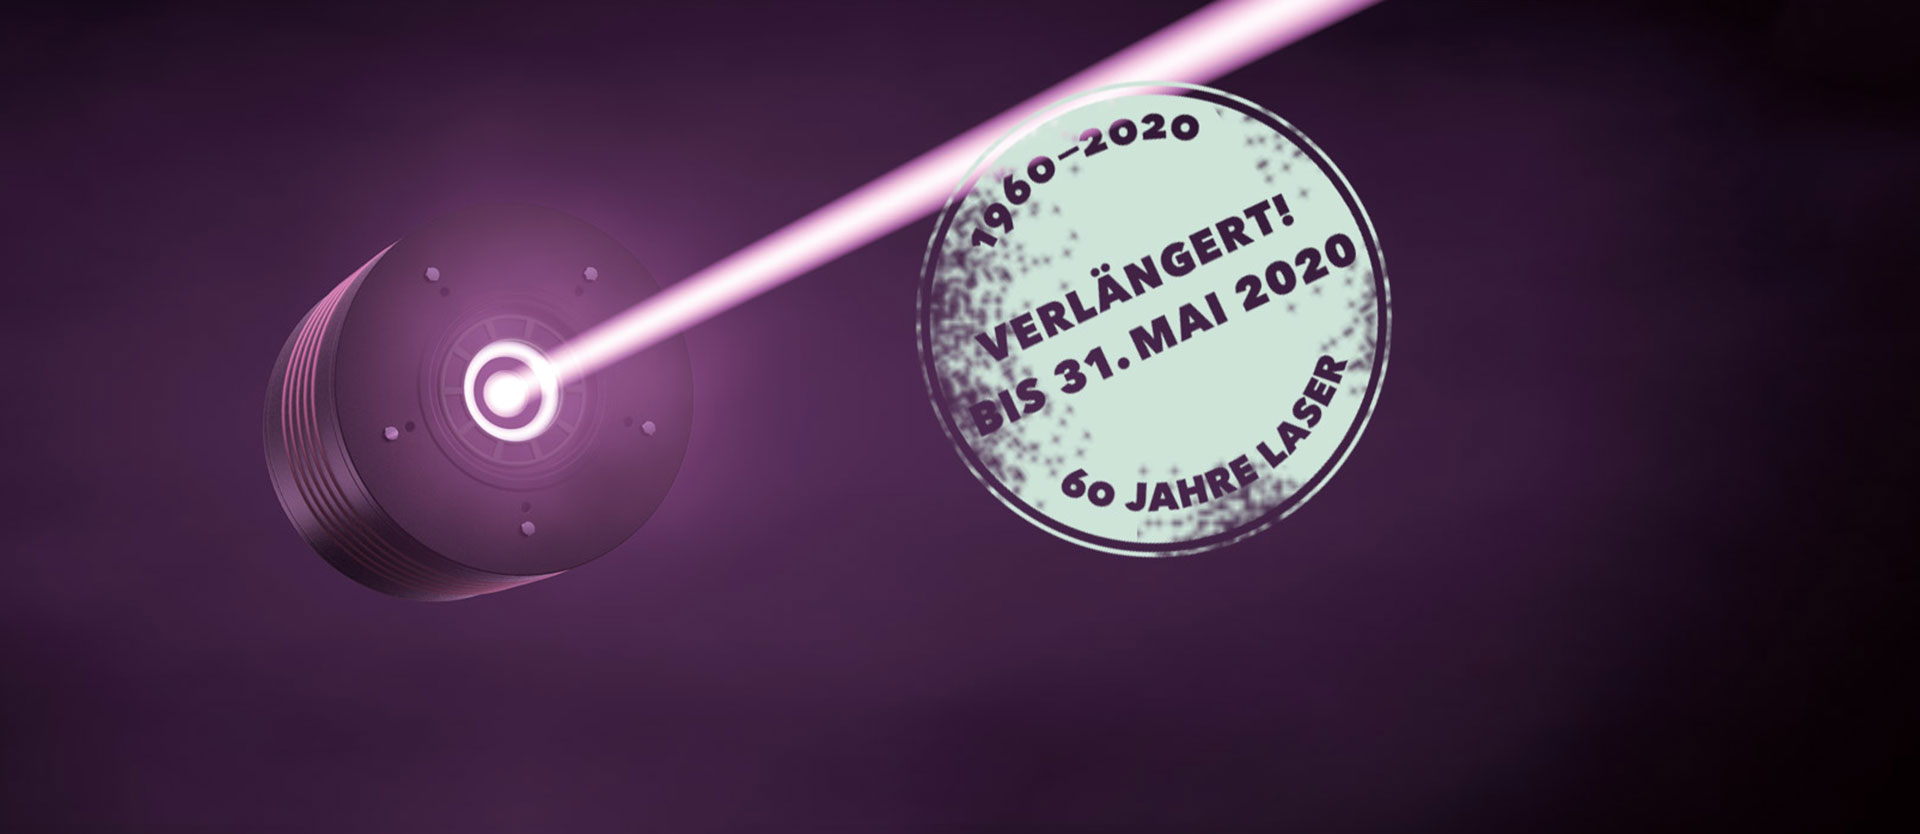 Laser | Licht | Leben verlängert bis 31.5.2020